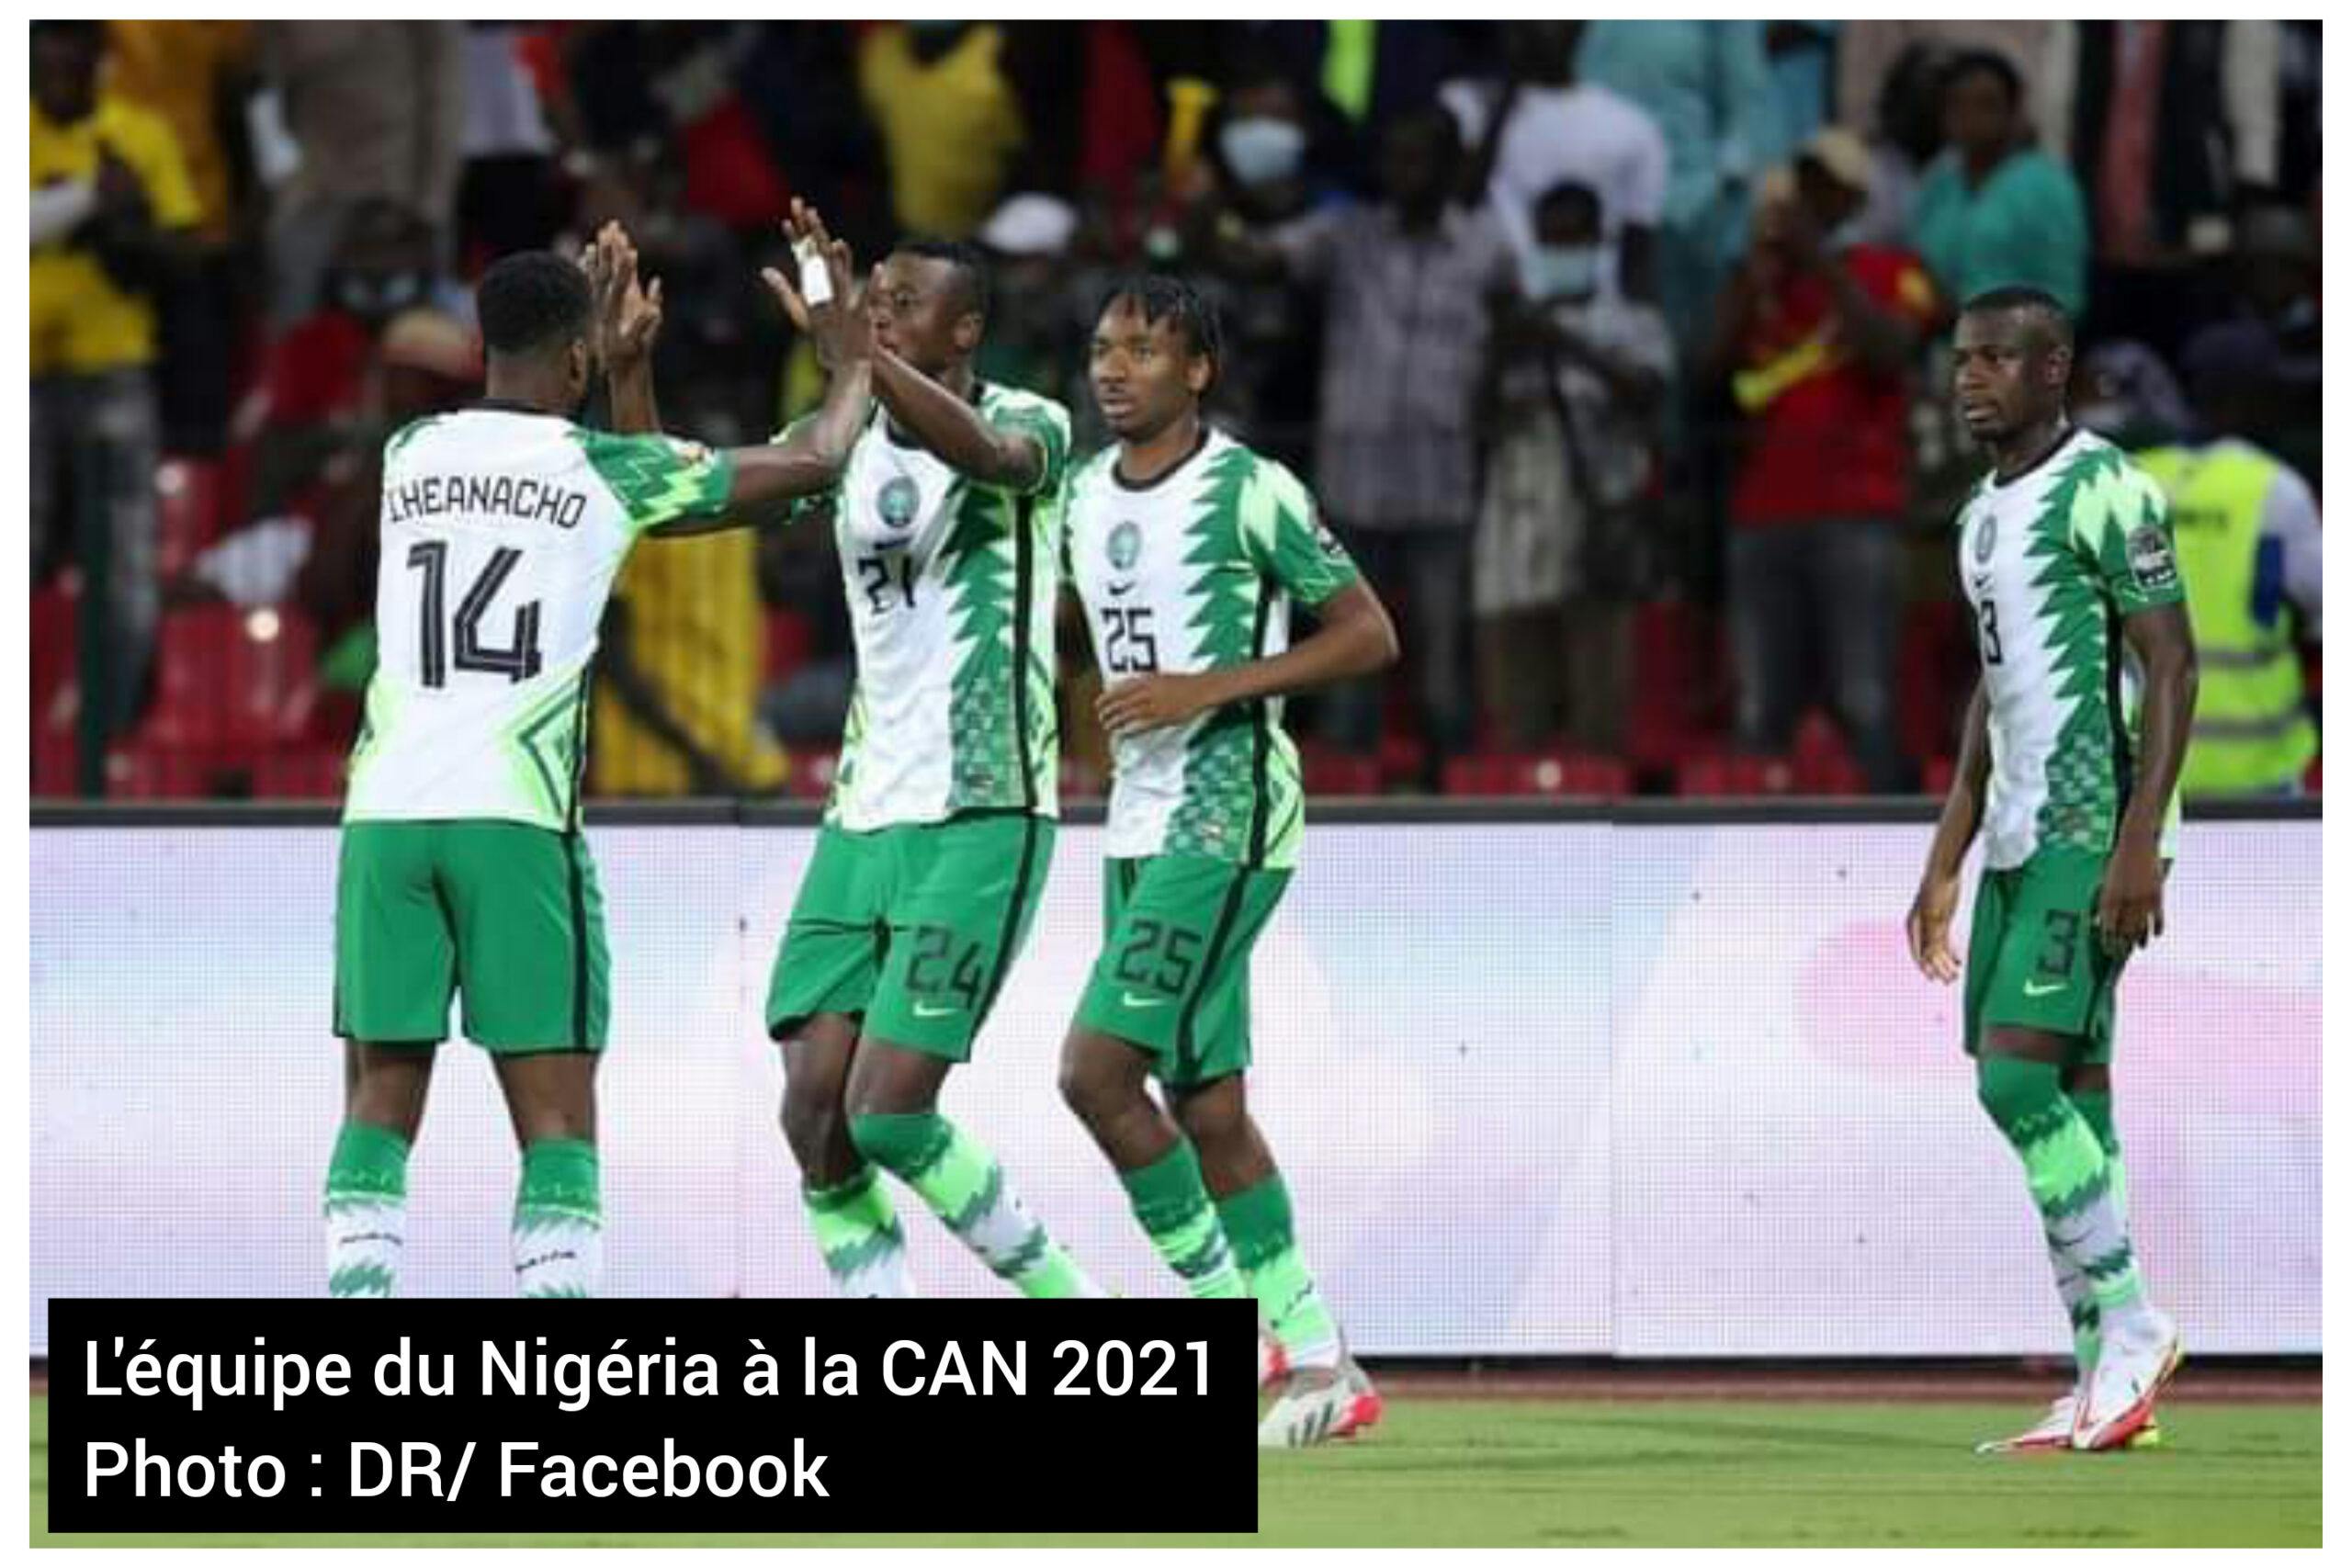 CAN 2021-8emes de finale : le Nigeria favori devant la Tunisie, Gabon et Burkina Faso pour un match équilibré 